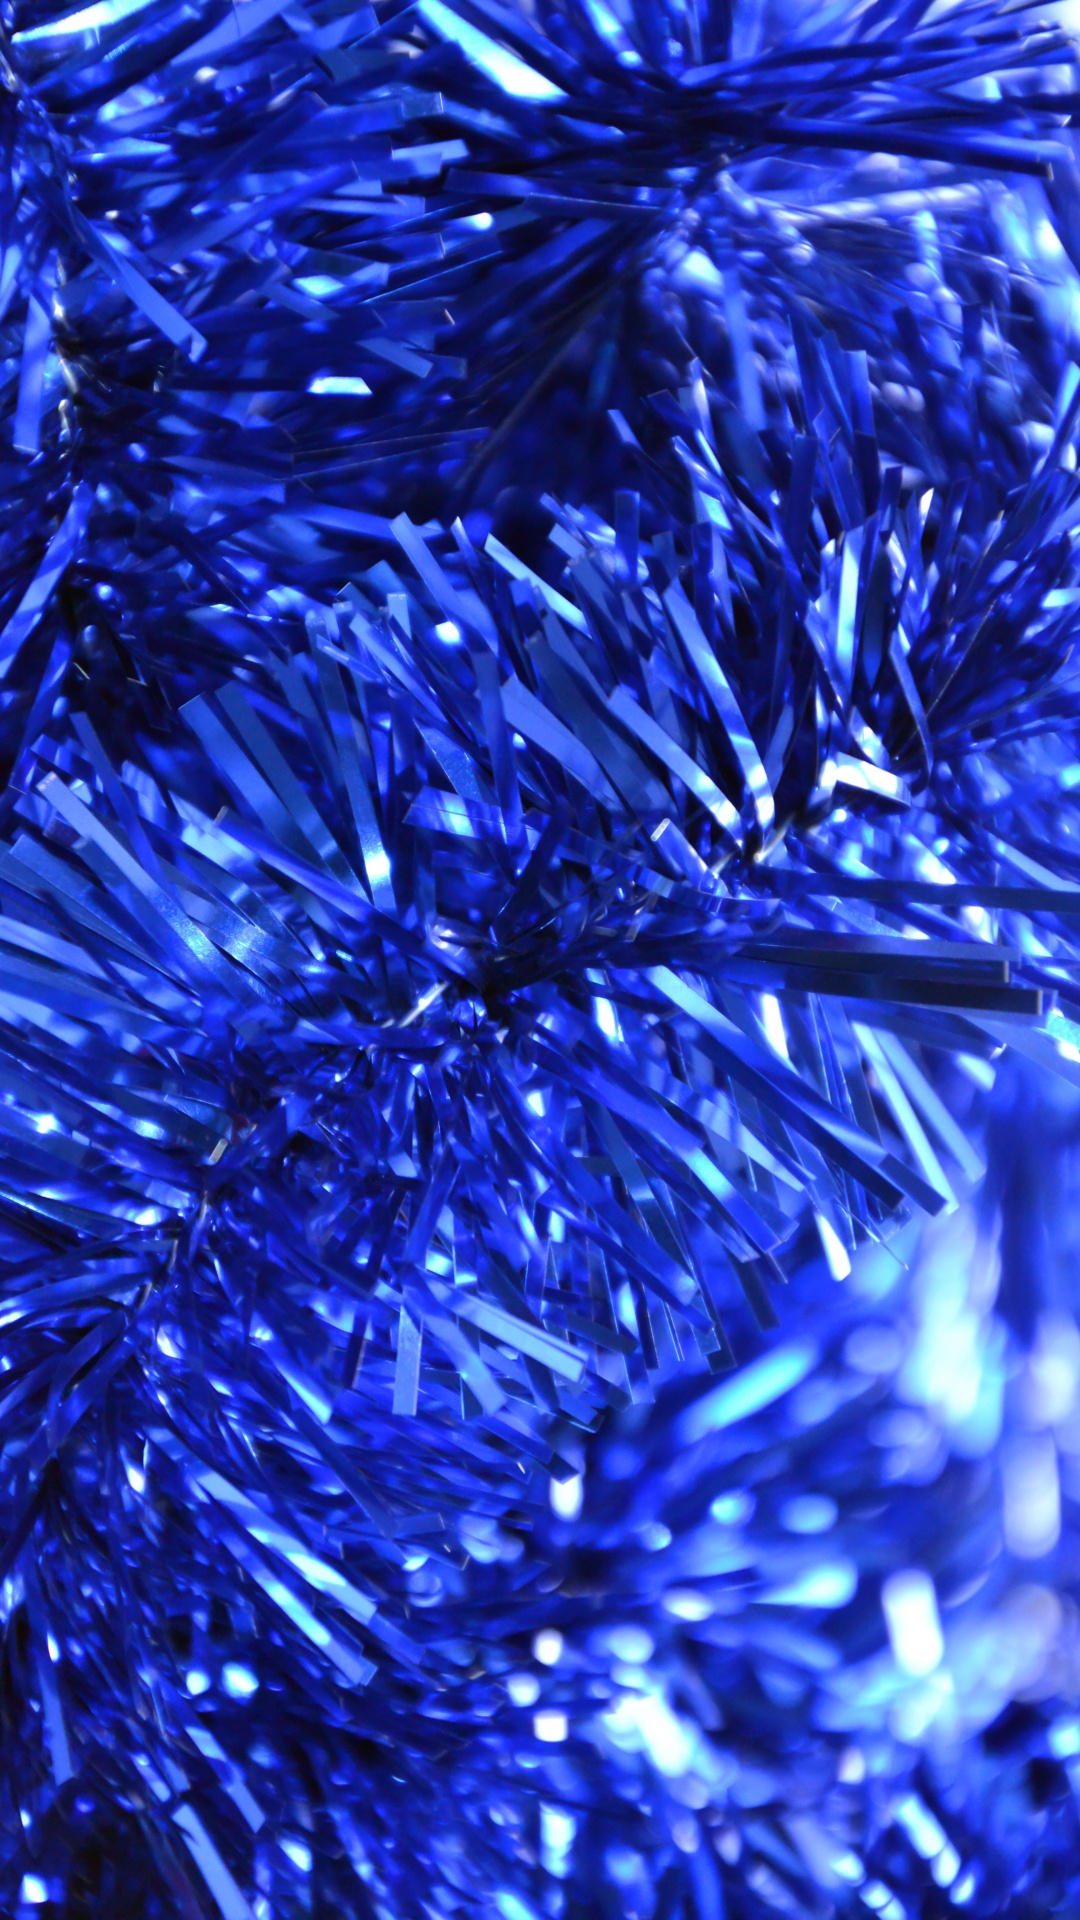 Lametta, Neujahr, Christmas Ornament, Weihnachten, Kobaltblau. Wallpaper in 1080x1920 Resolution